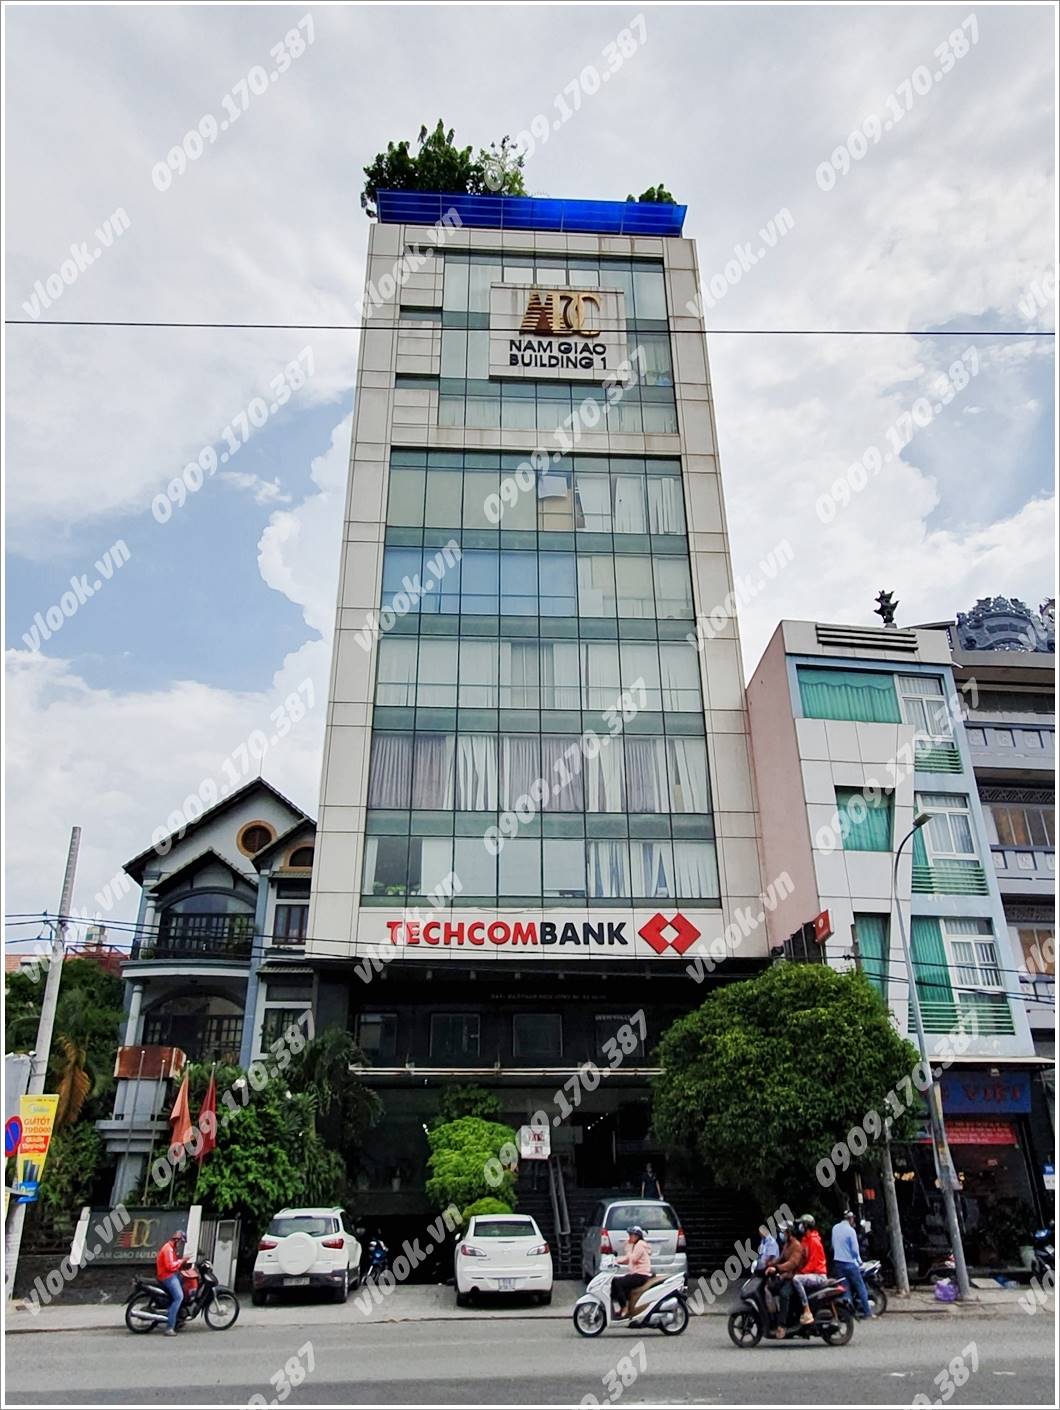 Cao ốc văn phòng cho thuê Nam Giao Building, Phan Xích Long, Quận Phú Nhuận TP.HCM - vlook.vn